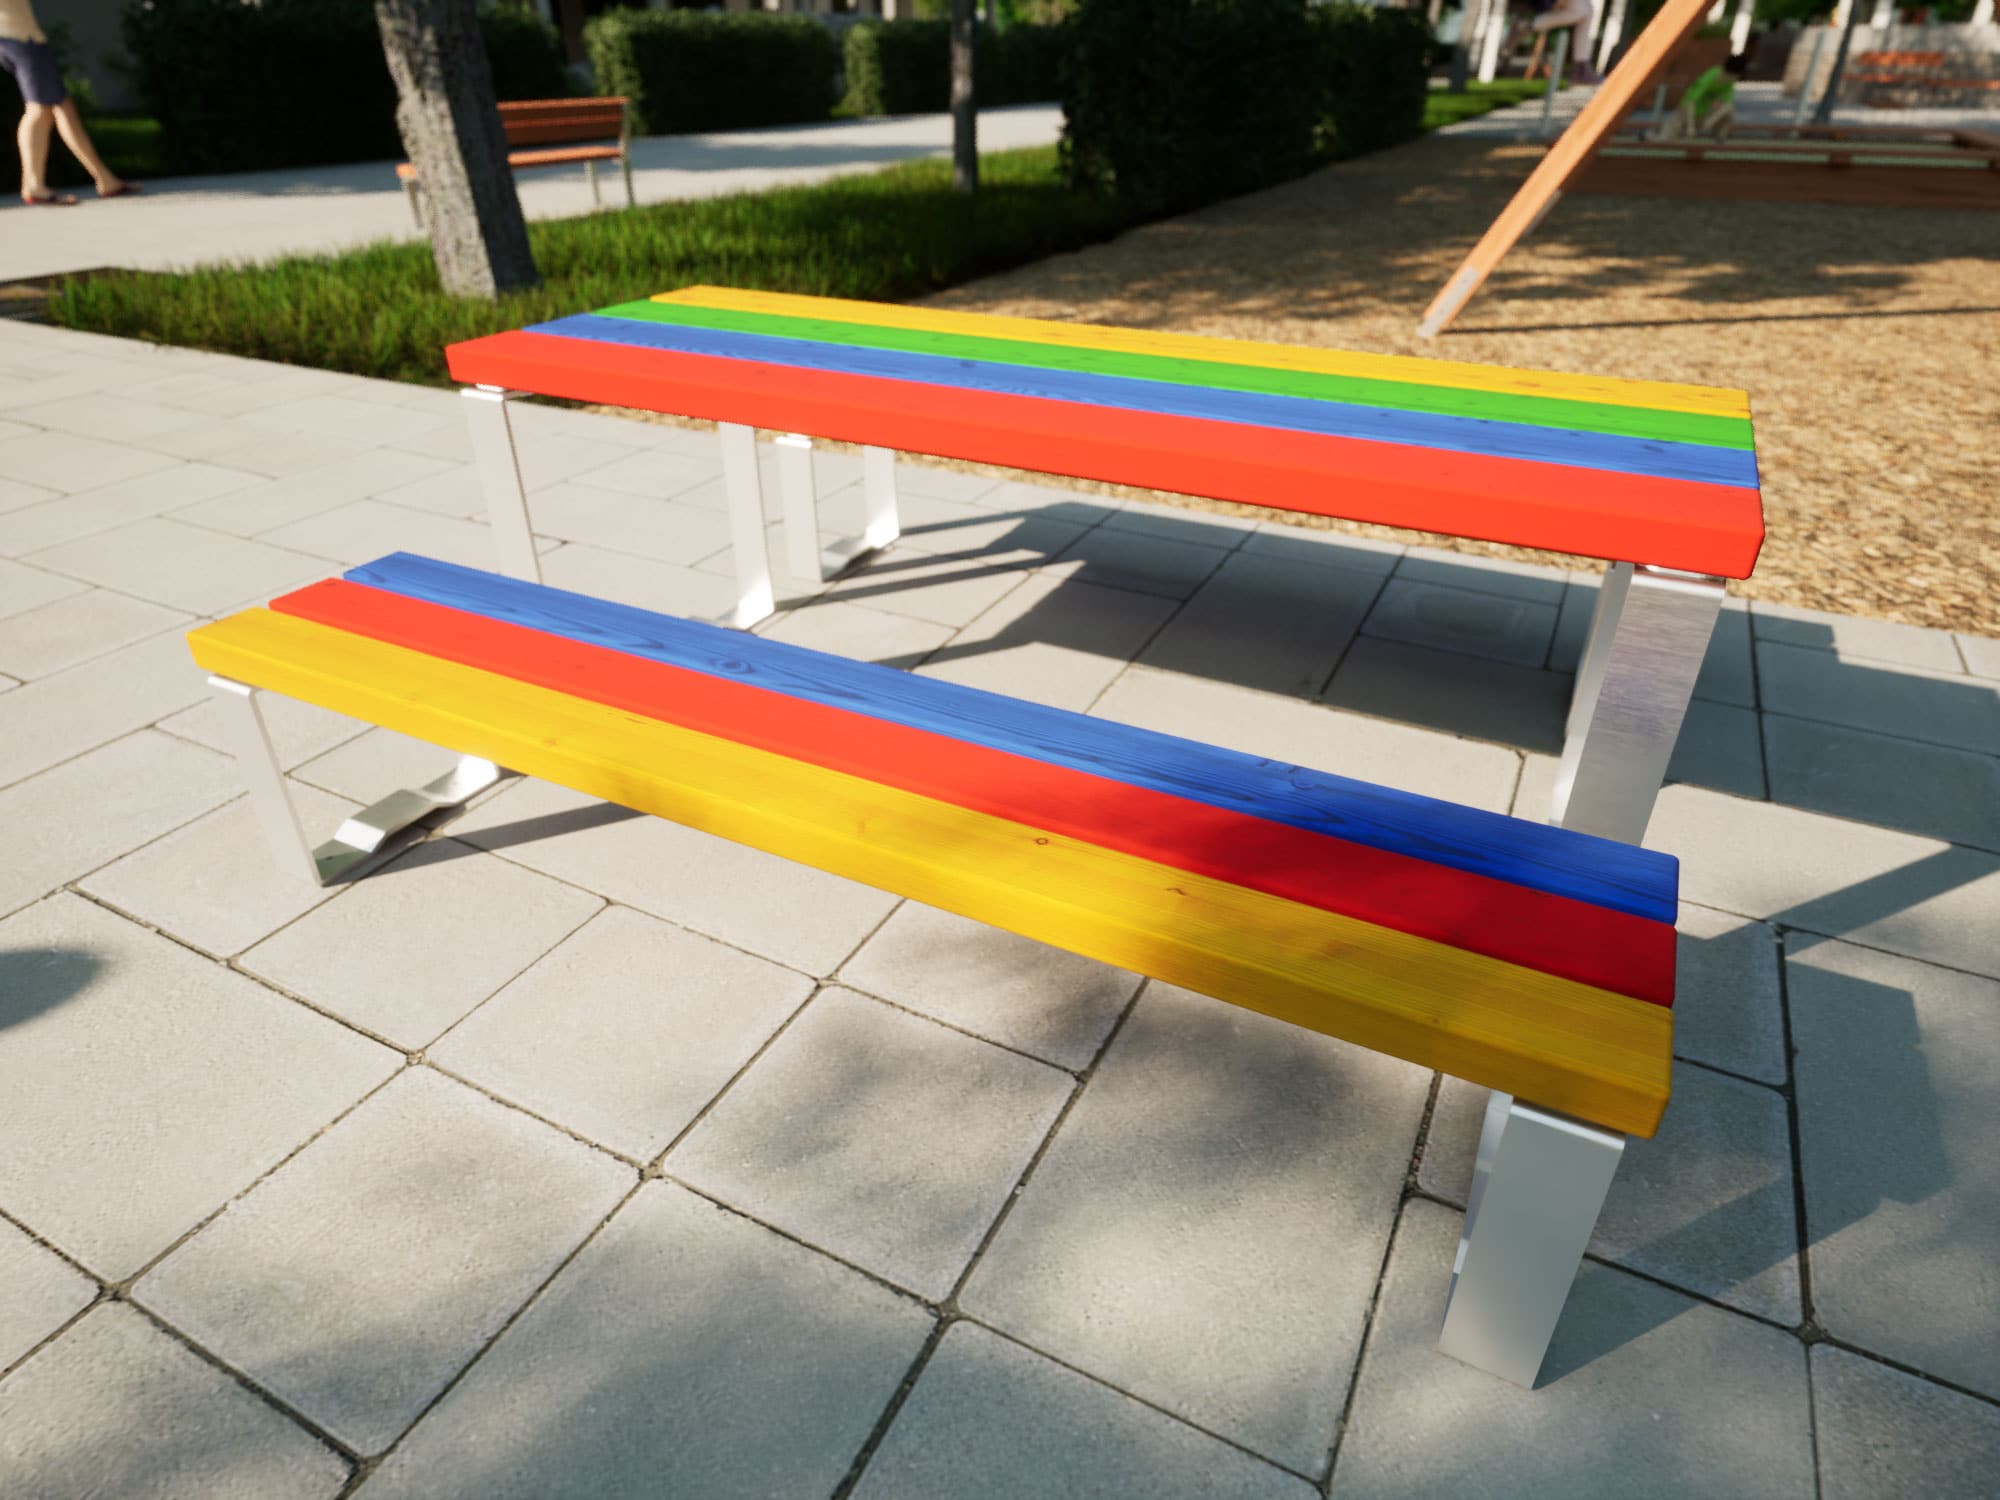 Bänke und Tische in bunten Farben für Kinder am Spielplatz